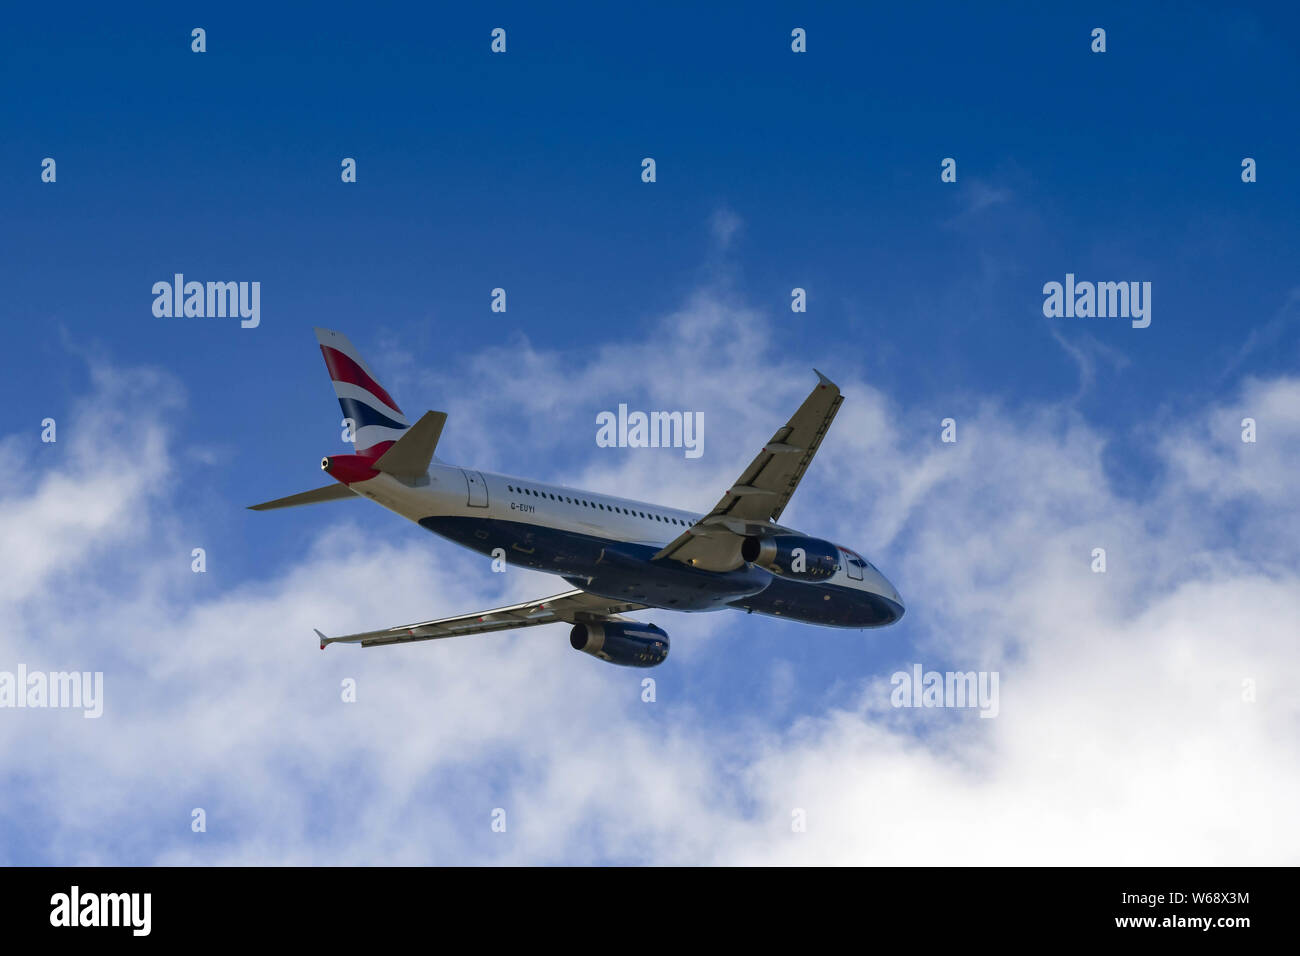 LONDON, ENGLAND - MÄRZ 2019: British Airways Airbus A320 vom Flughafen London Heathrow klettern. Stockfoto